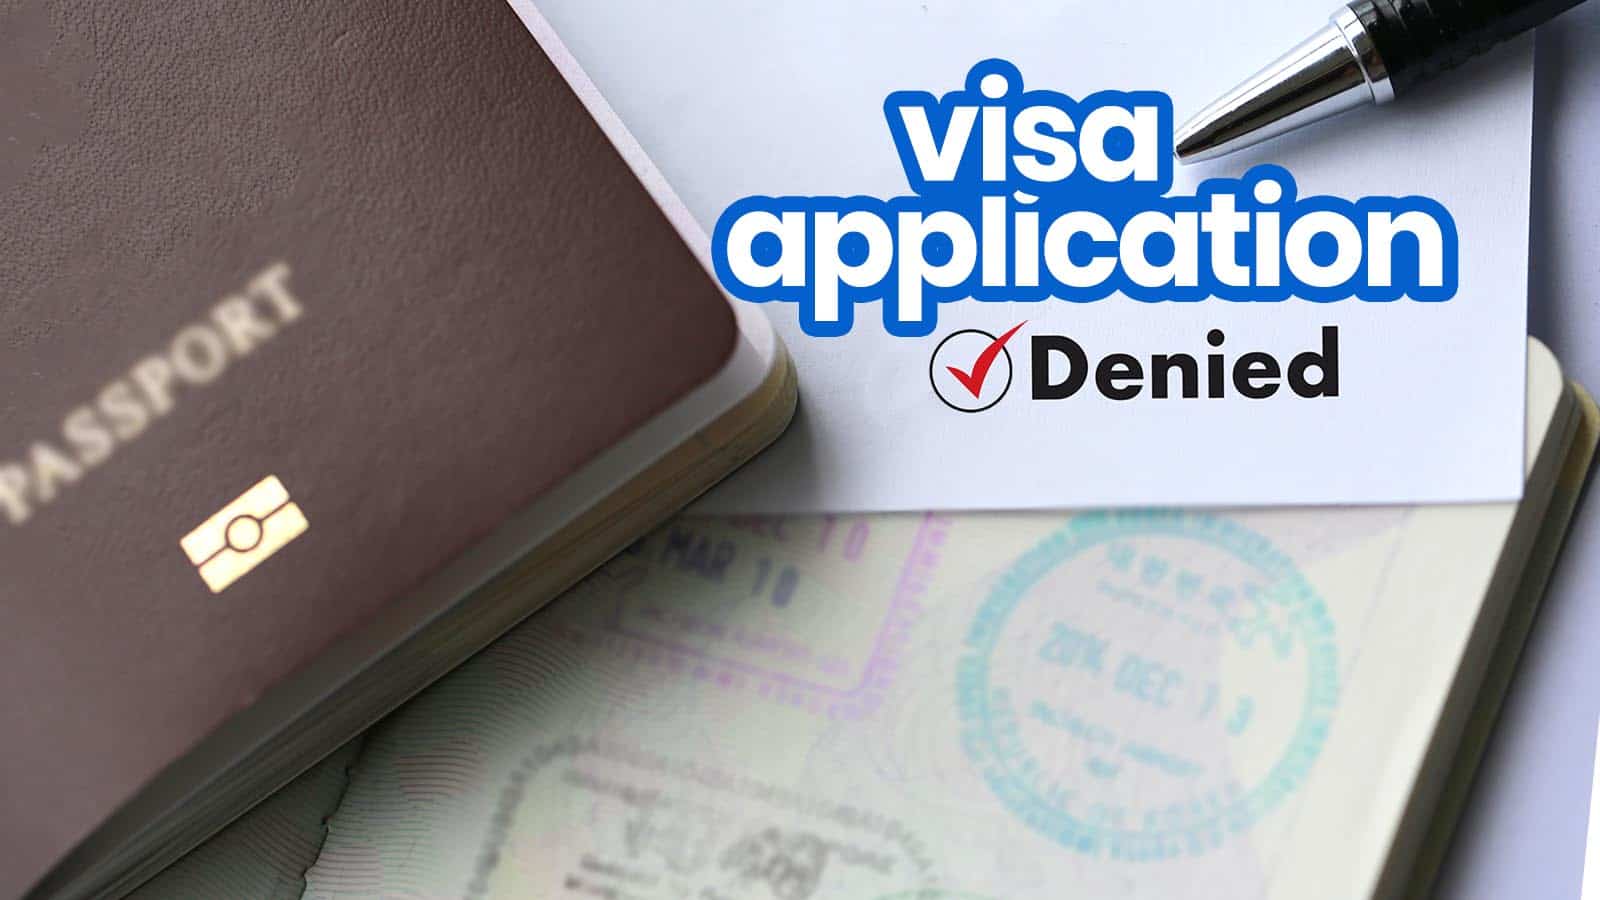 签证申请被拒:10个常见原因及避免方法